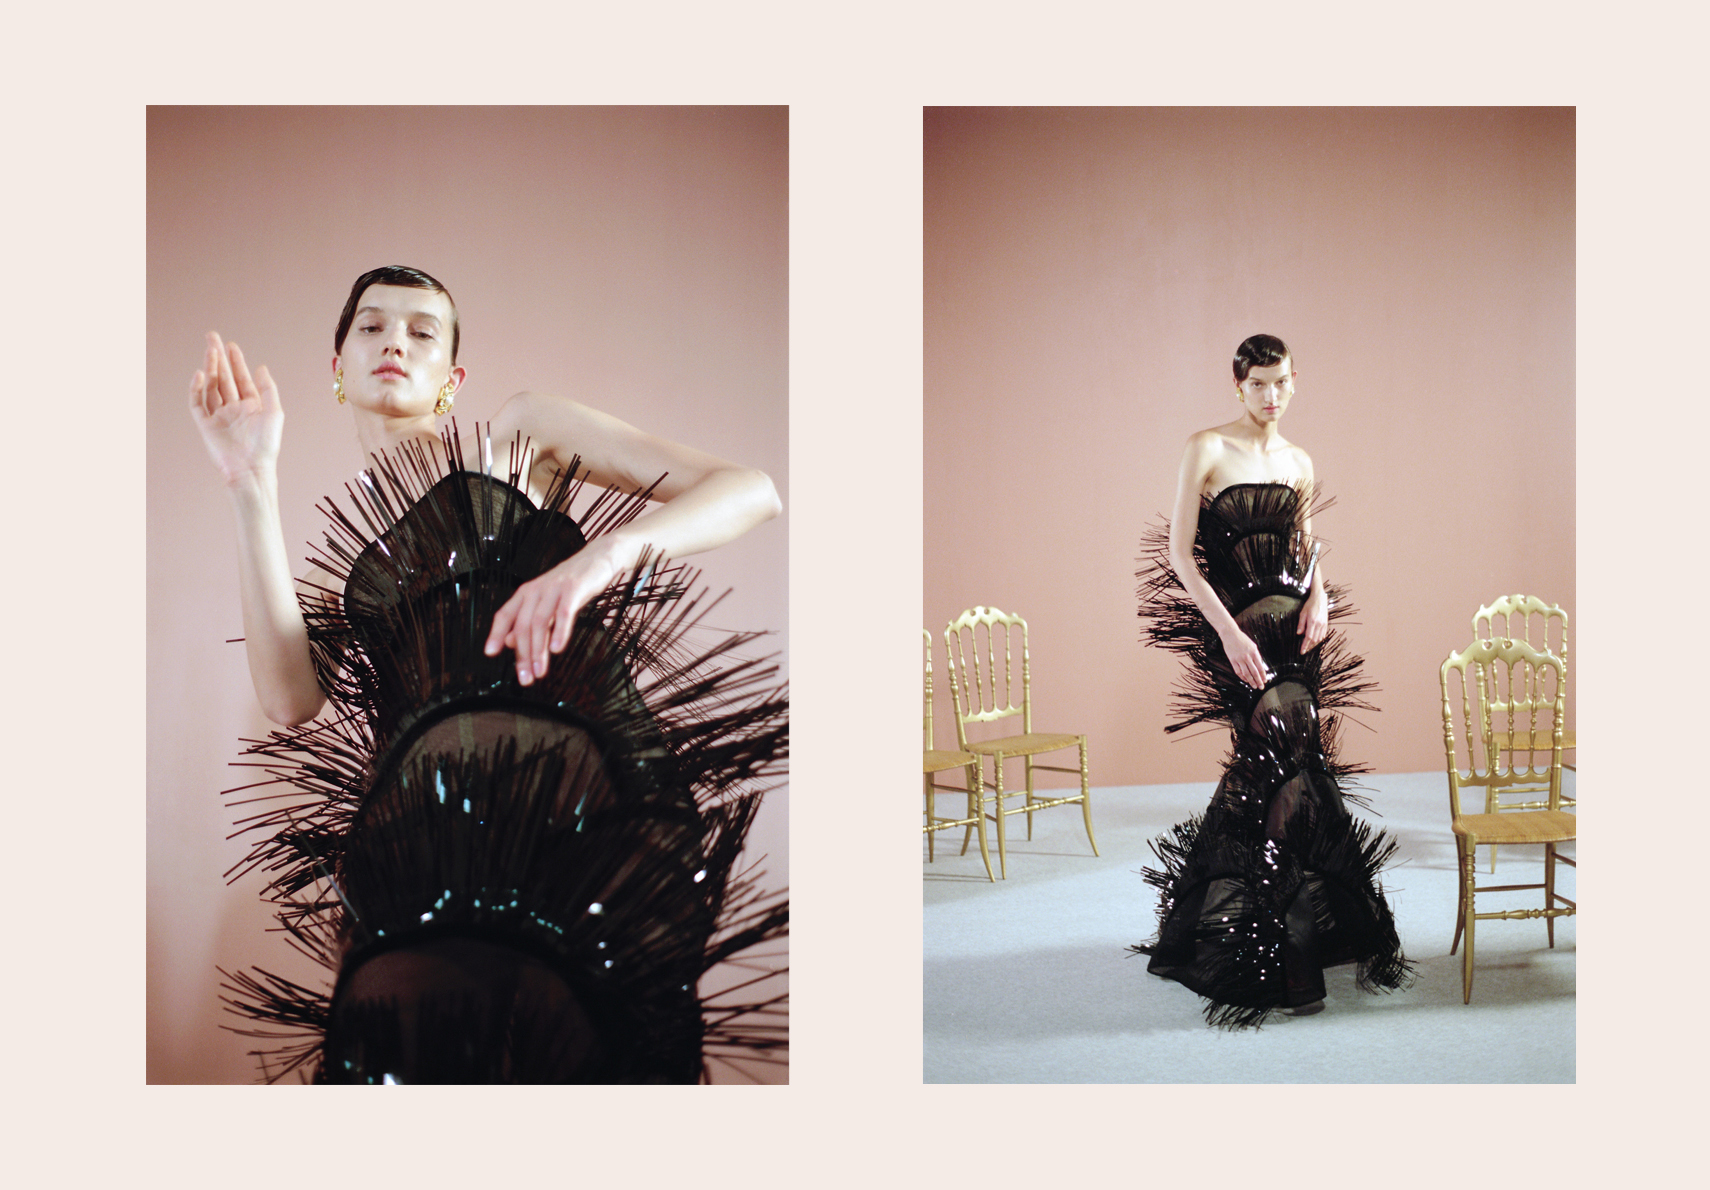 Sylvio Giardina, “La cura” dell’Haute Couture nel viaggio onirico della moda